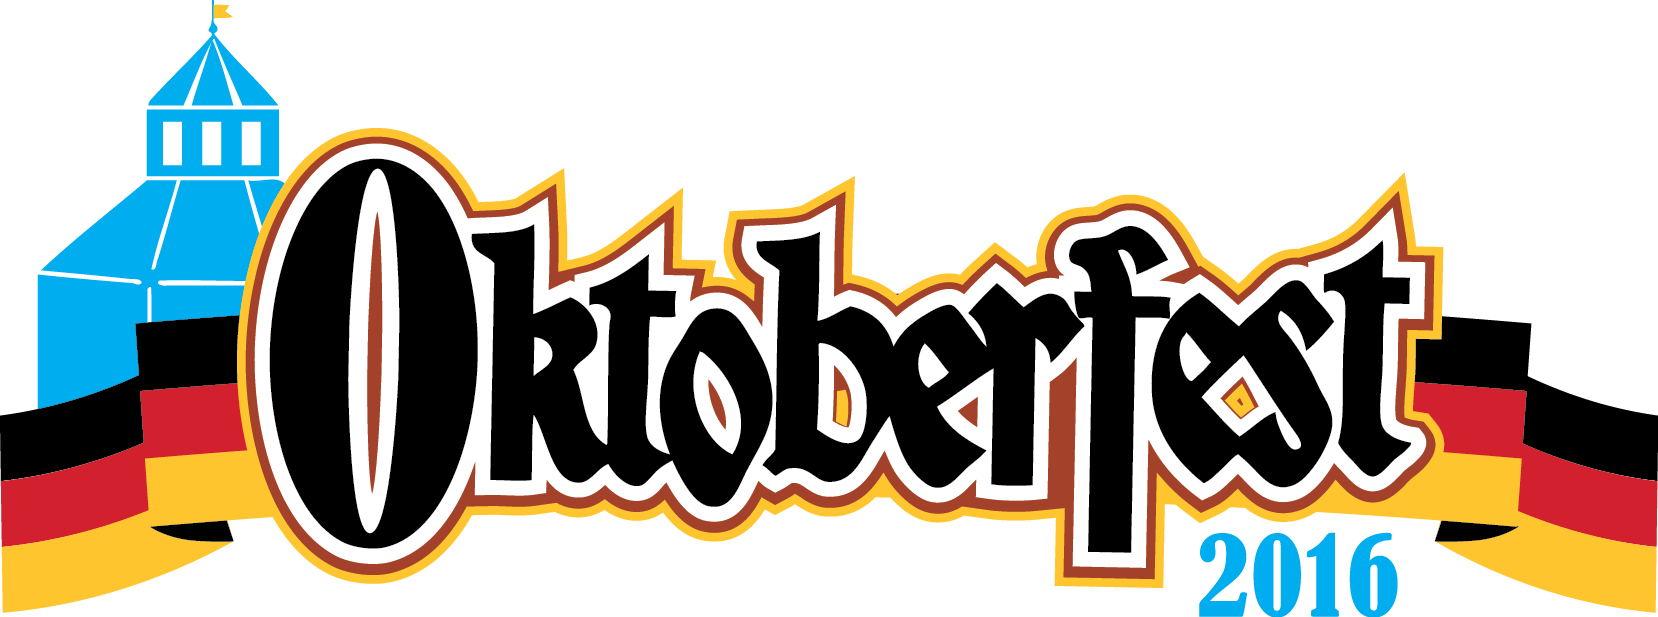 Oktoberfest 2016: cosa fare e gli eventi